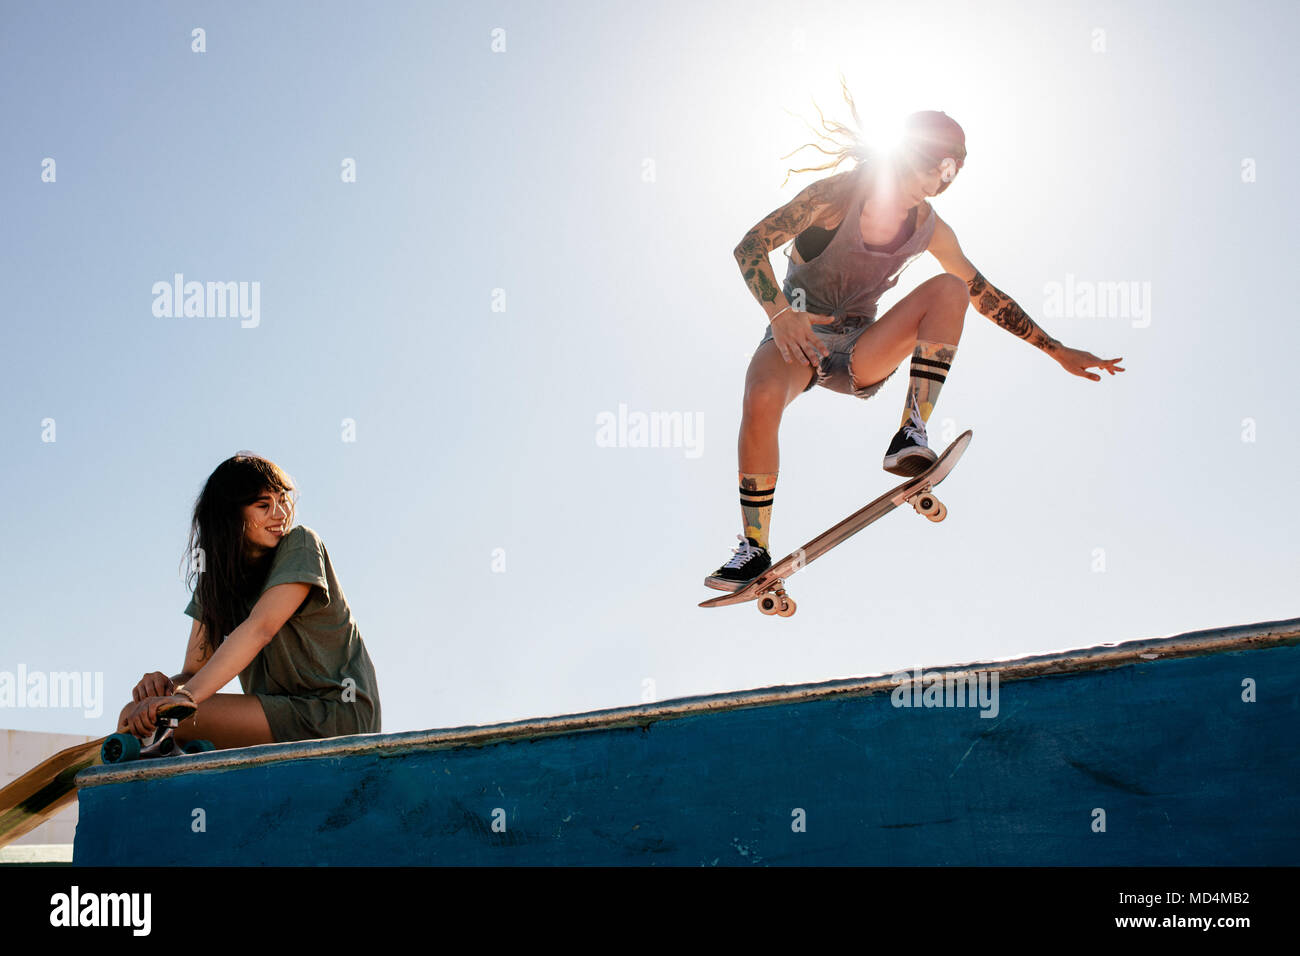 Patinador femenina cabalga sobre monopatín con una amiga sentada en la rampa. Hembra de skate en el skate park con un amigo viendo la rutina. Foto de stock